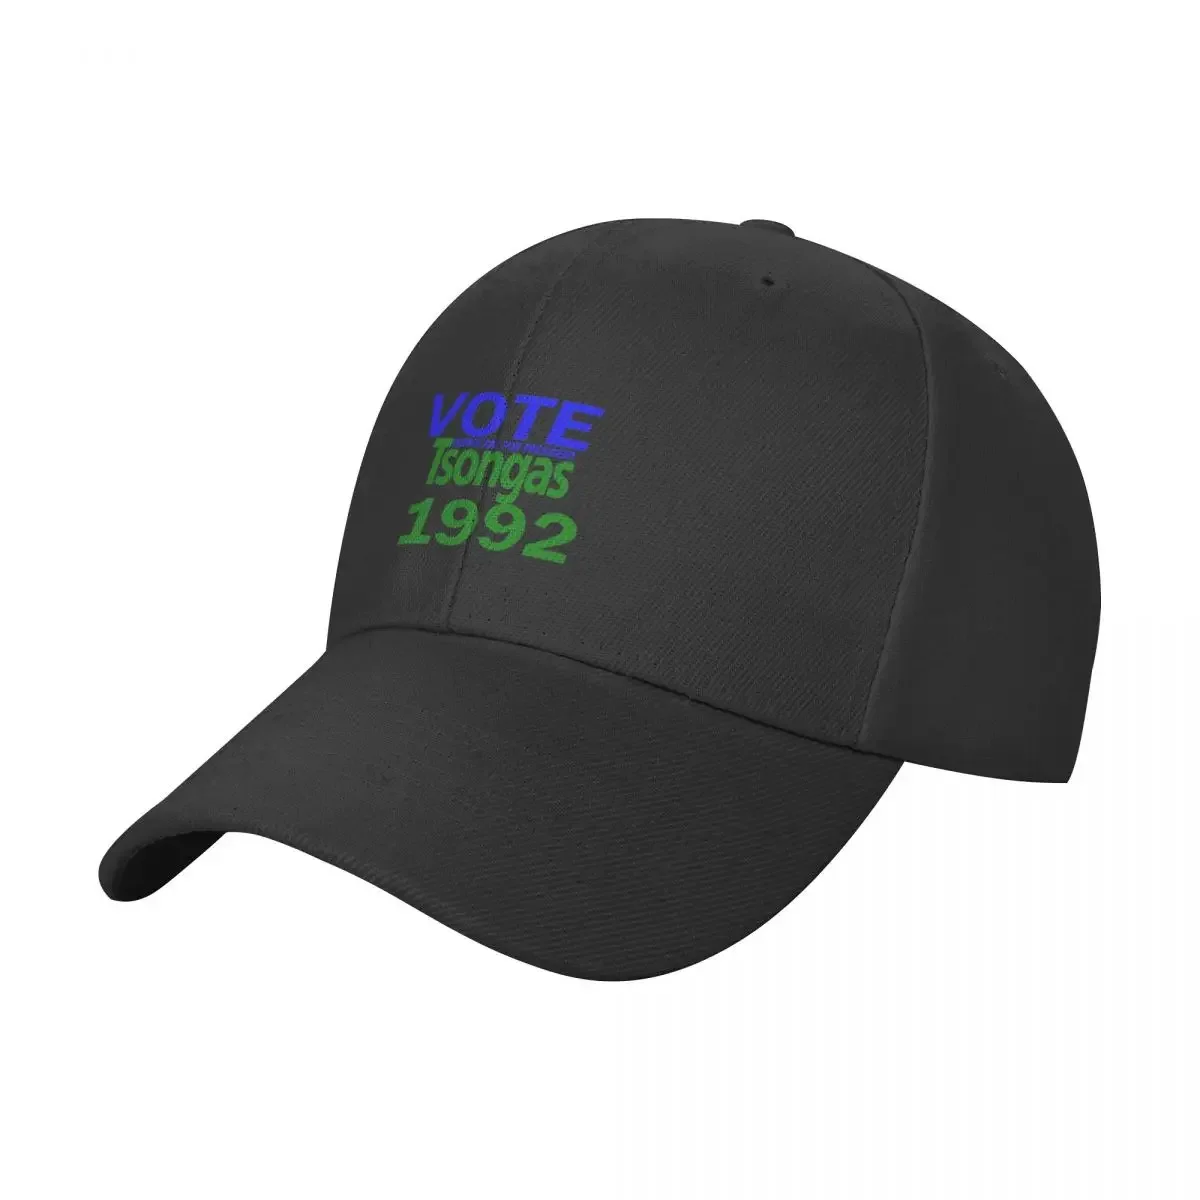 

VOTE FOR TSONGAS 1992 Baseball Cap Visor Beach Bag Golf Hip Hop Men's Hats Women's